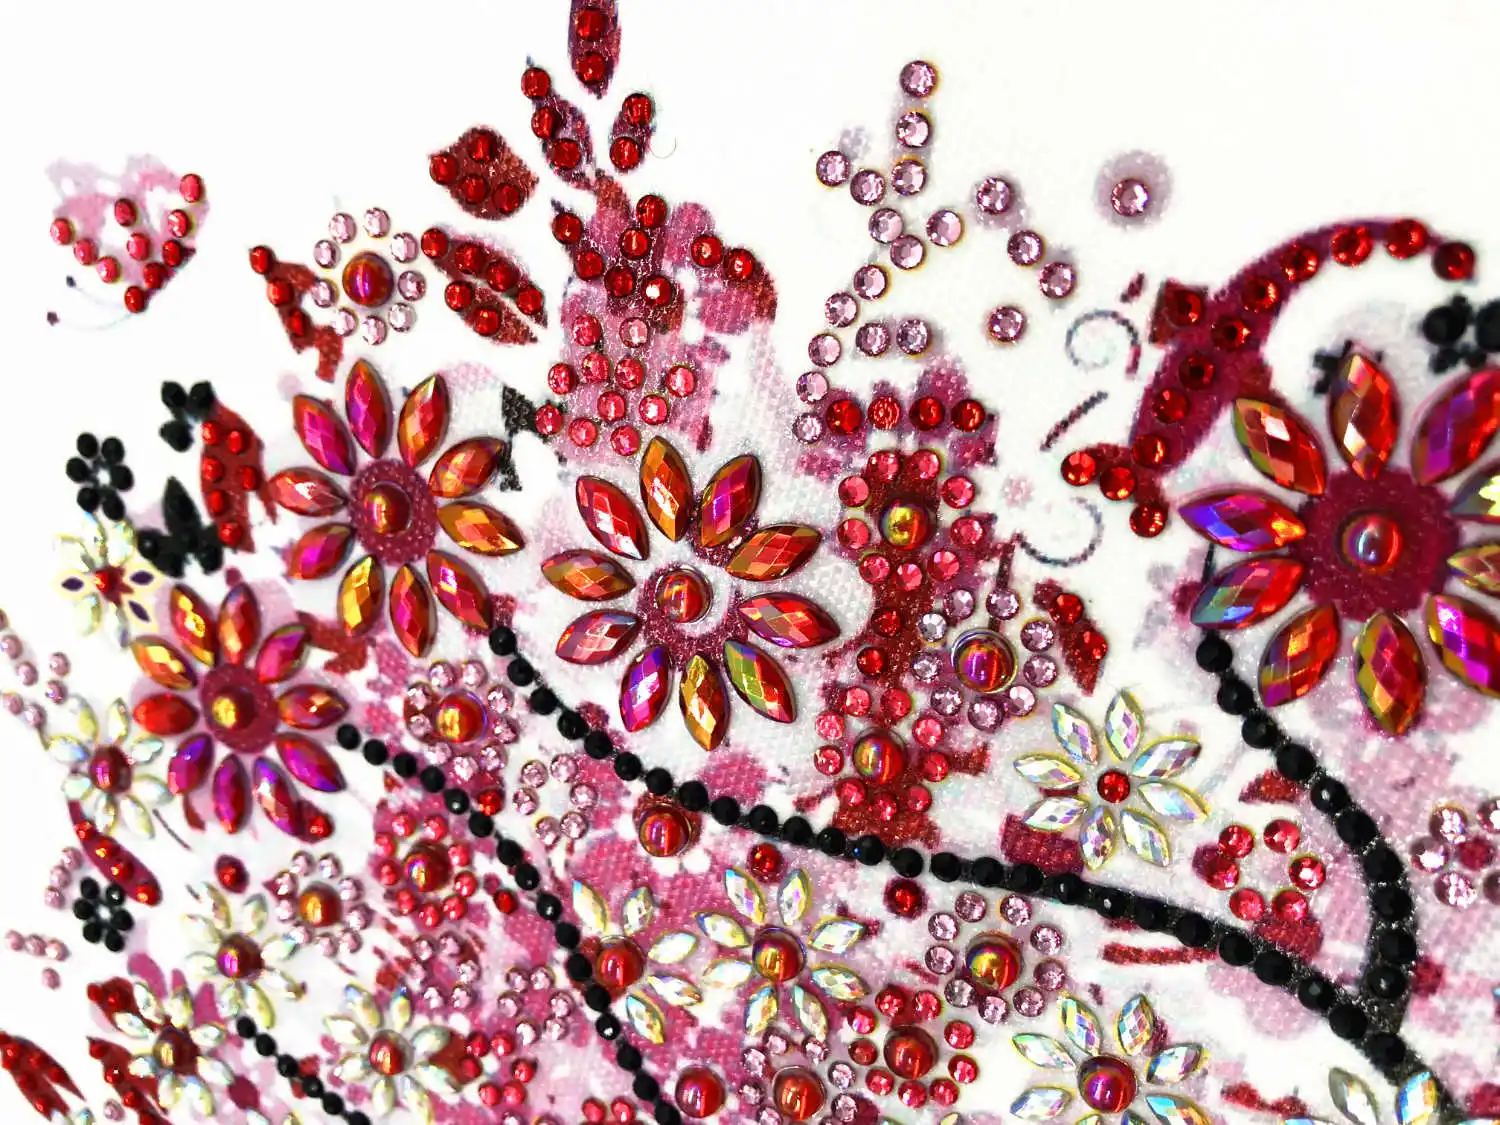 AZQSD алмазная живопись мозаика дерево особой формы ручной работы подарок картина стразы цветок дрель домашний декор 24x24 см